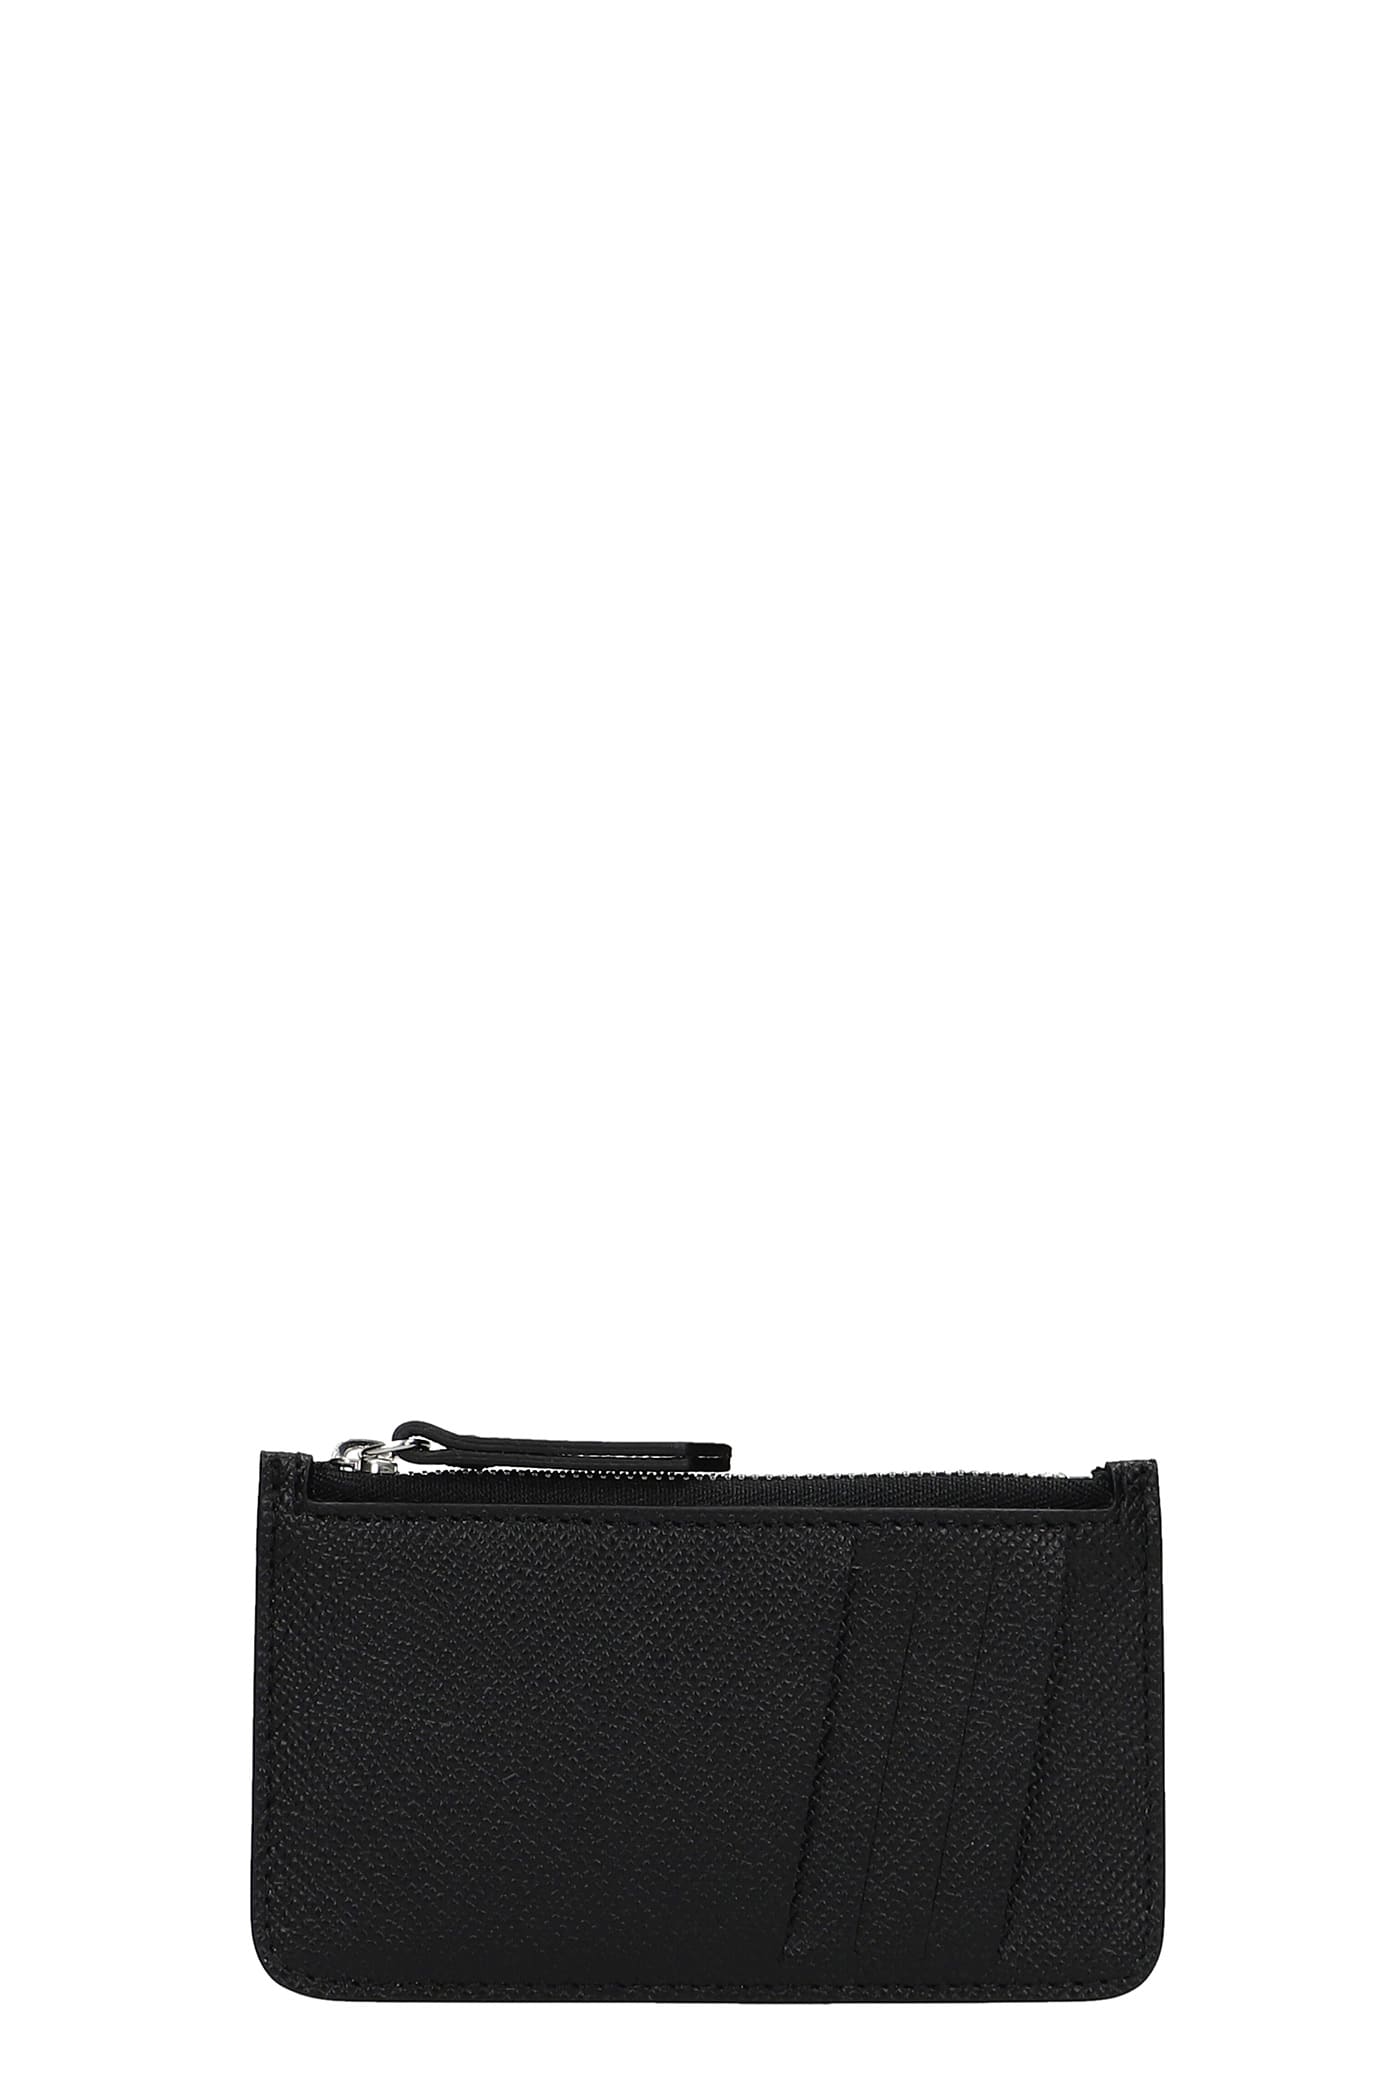 Maison Margiela Wallet In Black Leather